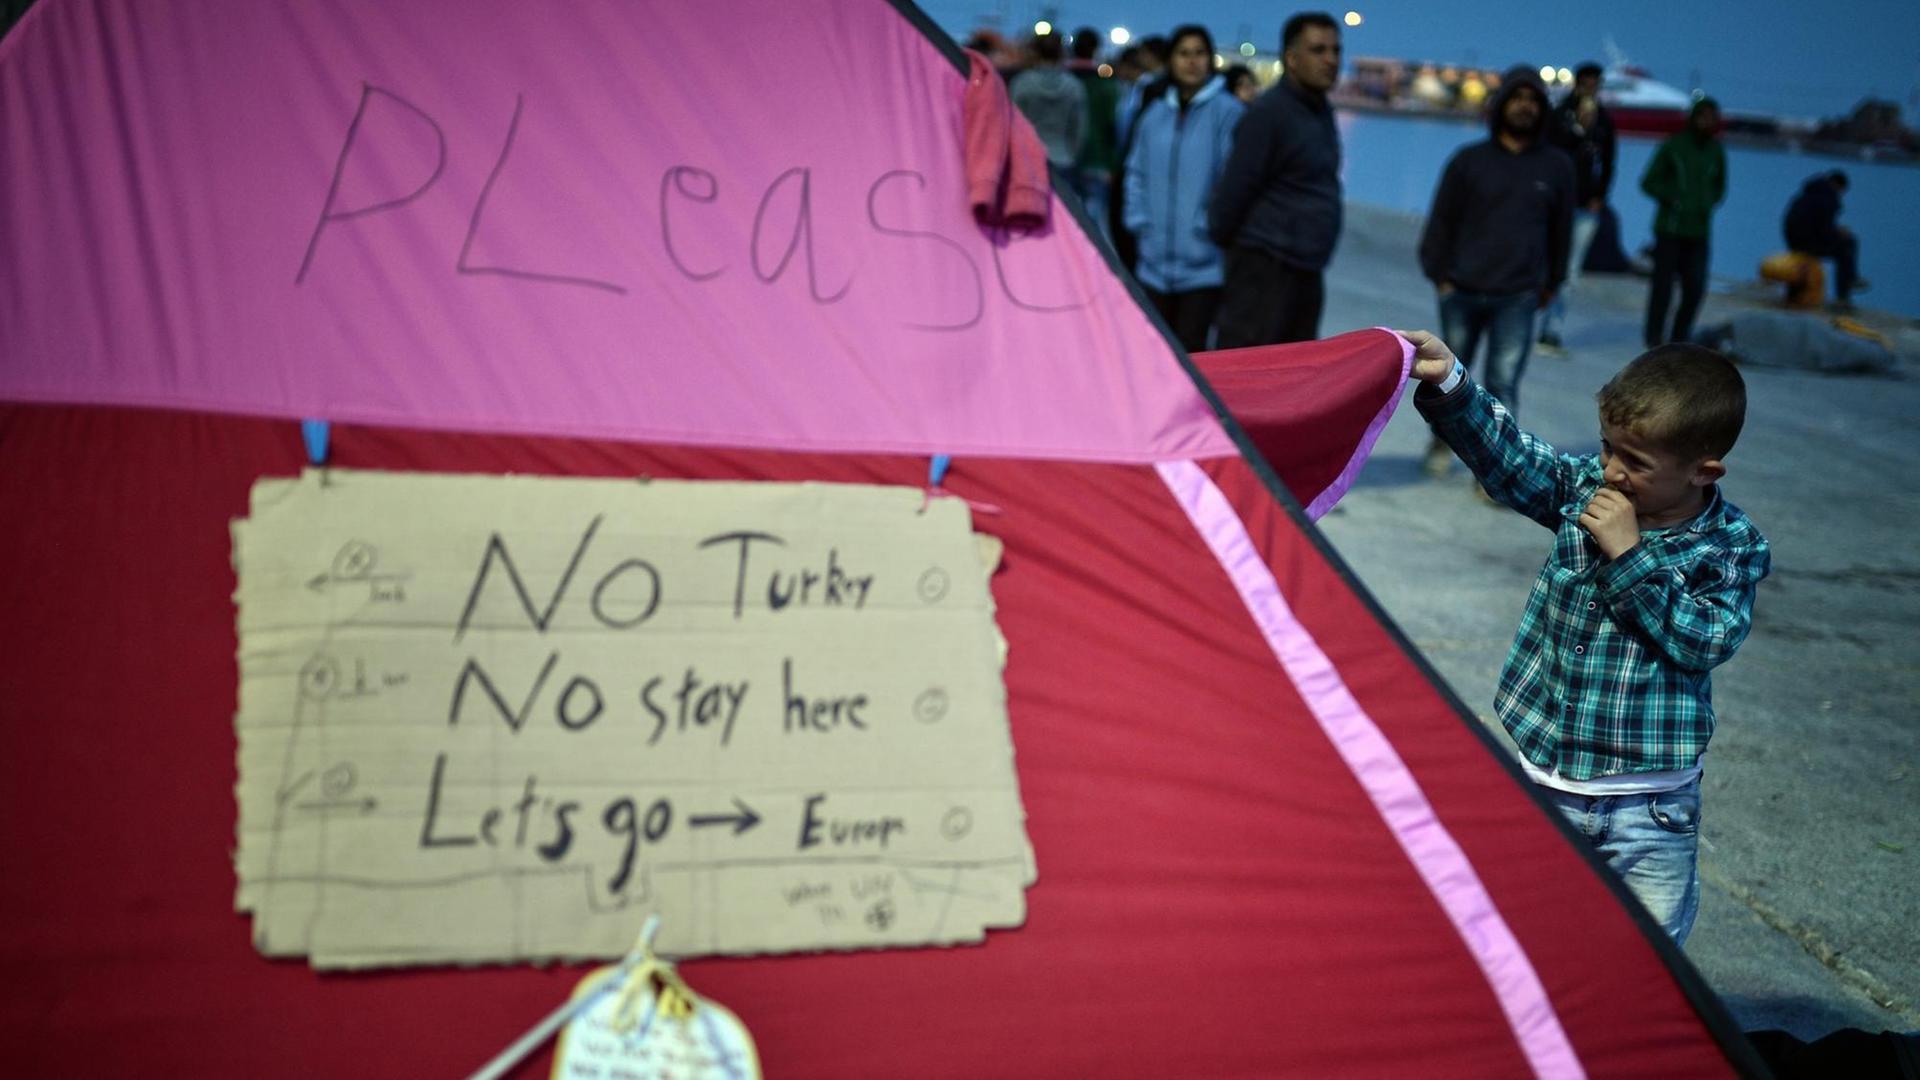 Auf einem Zelt im Flüchtlingslager Chios in Griechenland steht "Nicht in die Türkei, nicht hier bleiben, lasst uns nach Europa gehen."